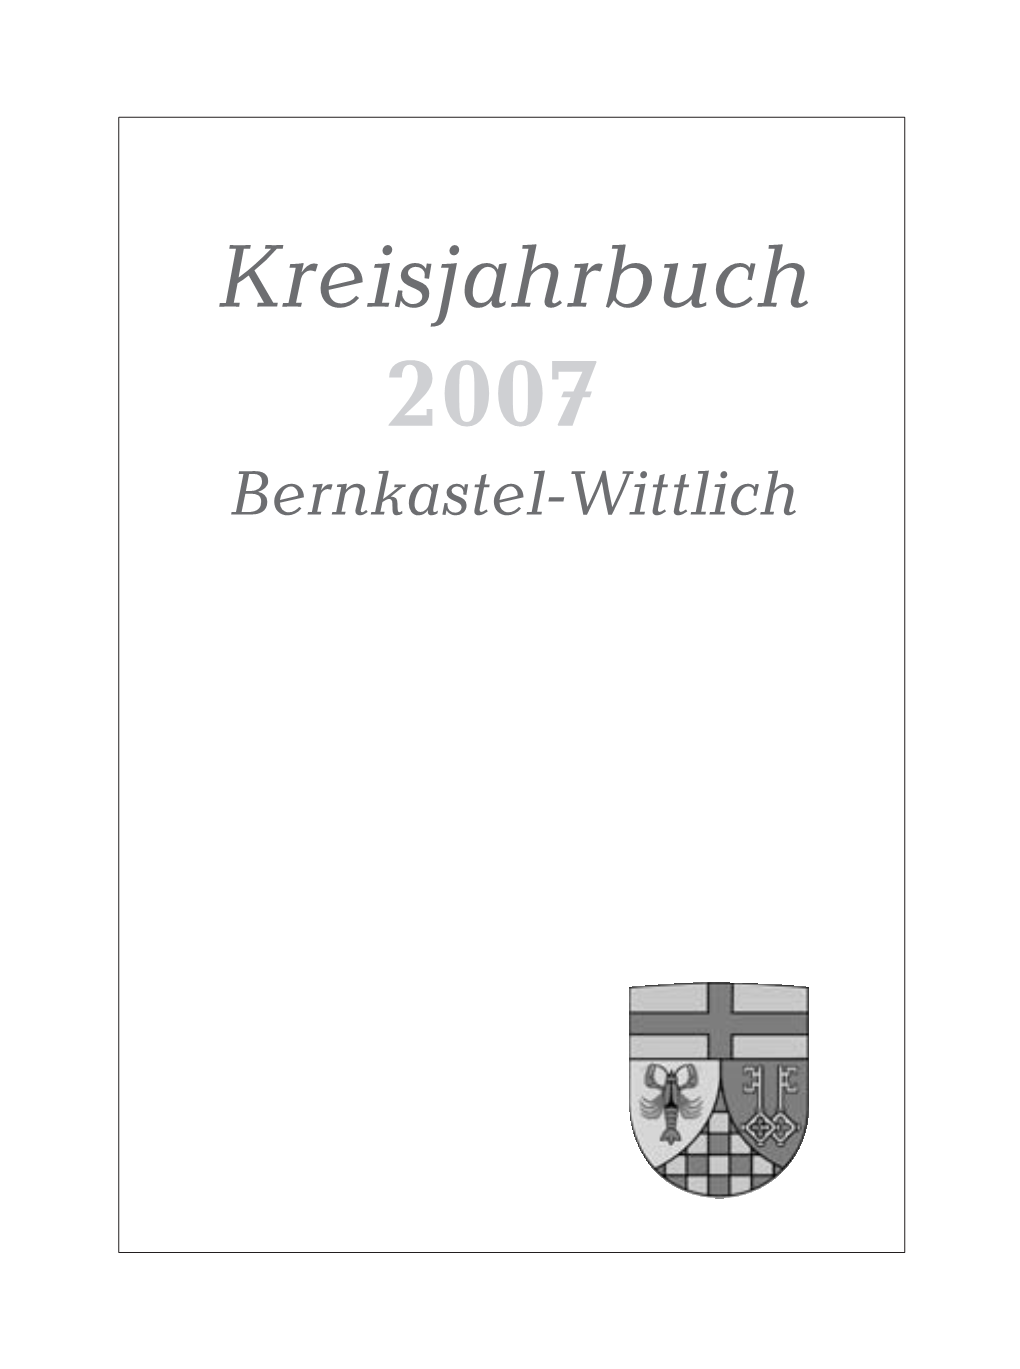 Kreisjahrbuch 2007 Bernkastel-Wittlich Titelbild: Pfarr- Und Wallfahrtskirche Klausen, Erbaut Um Die Mitte Des 15